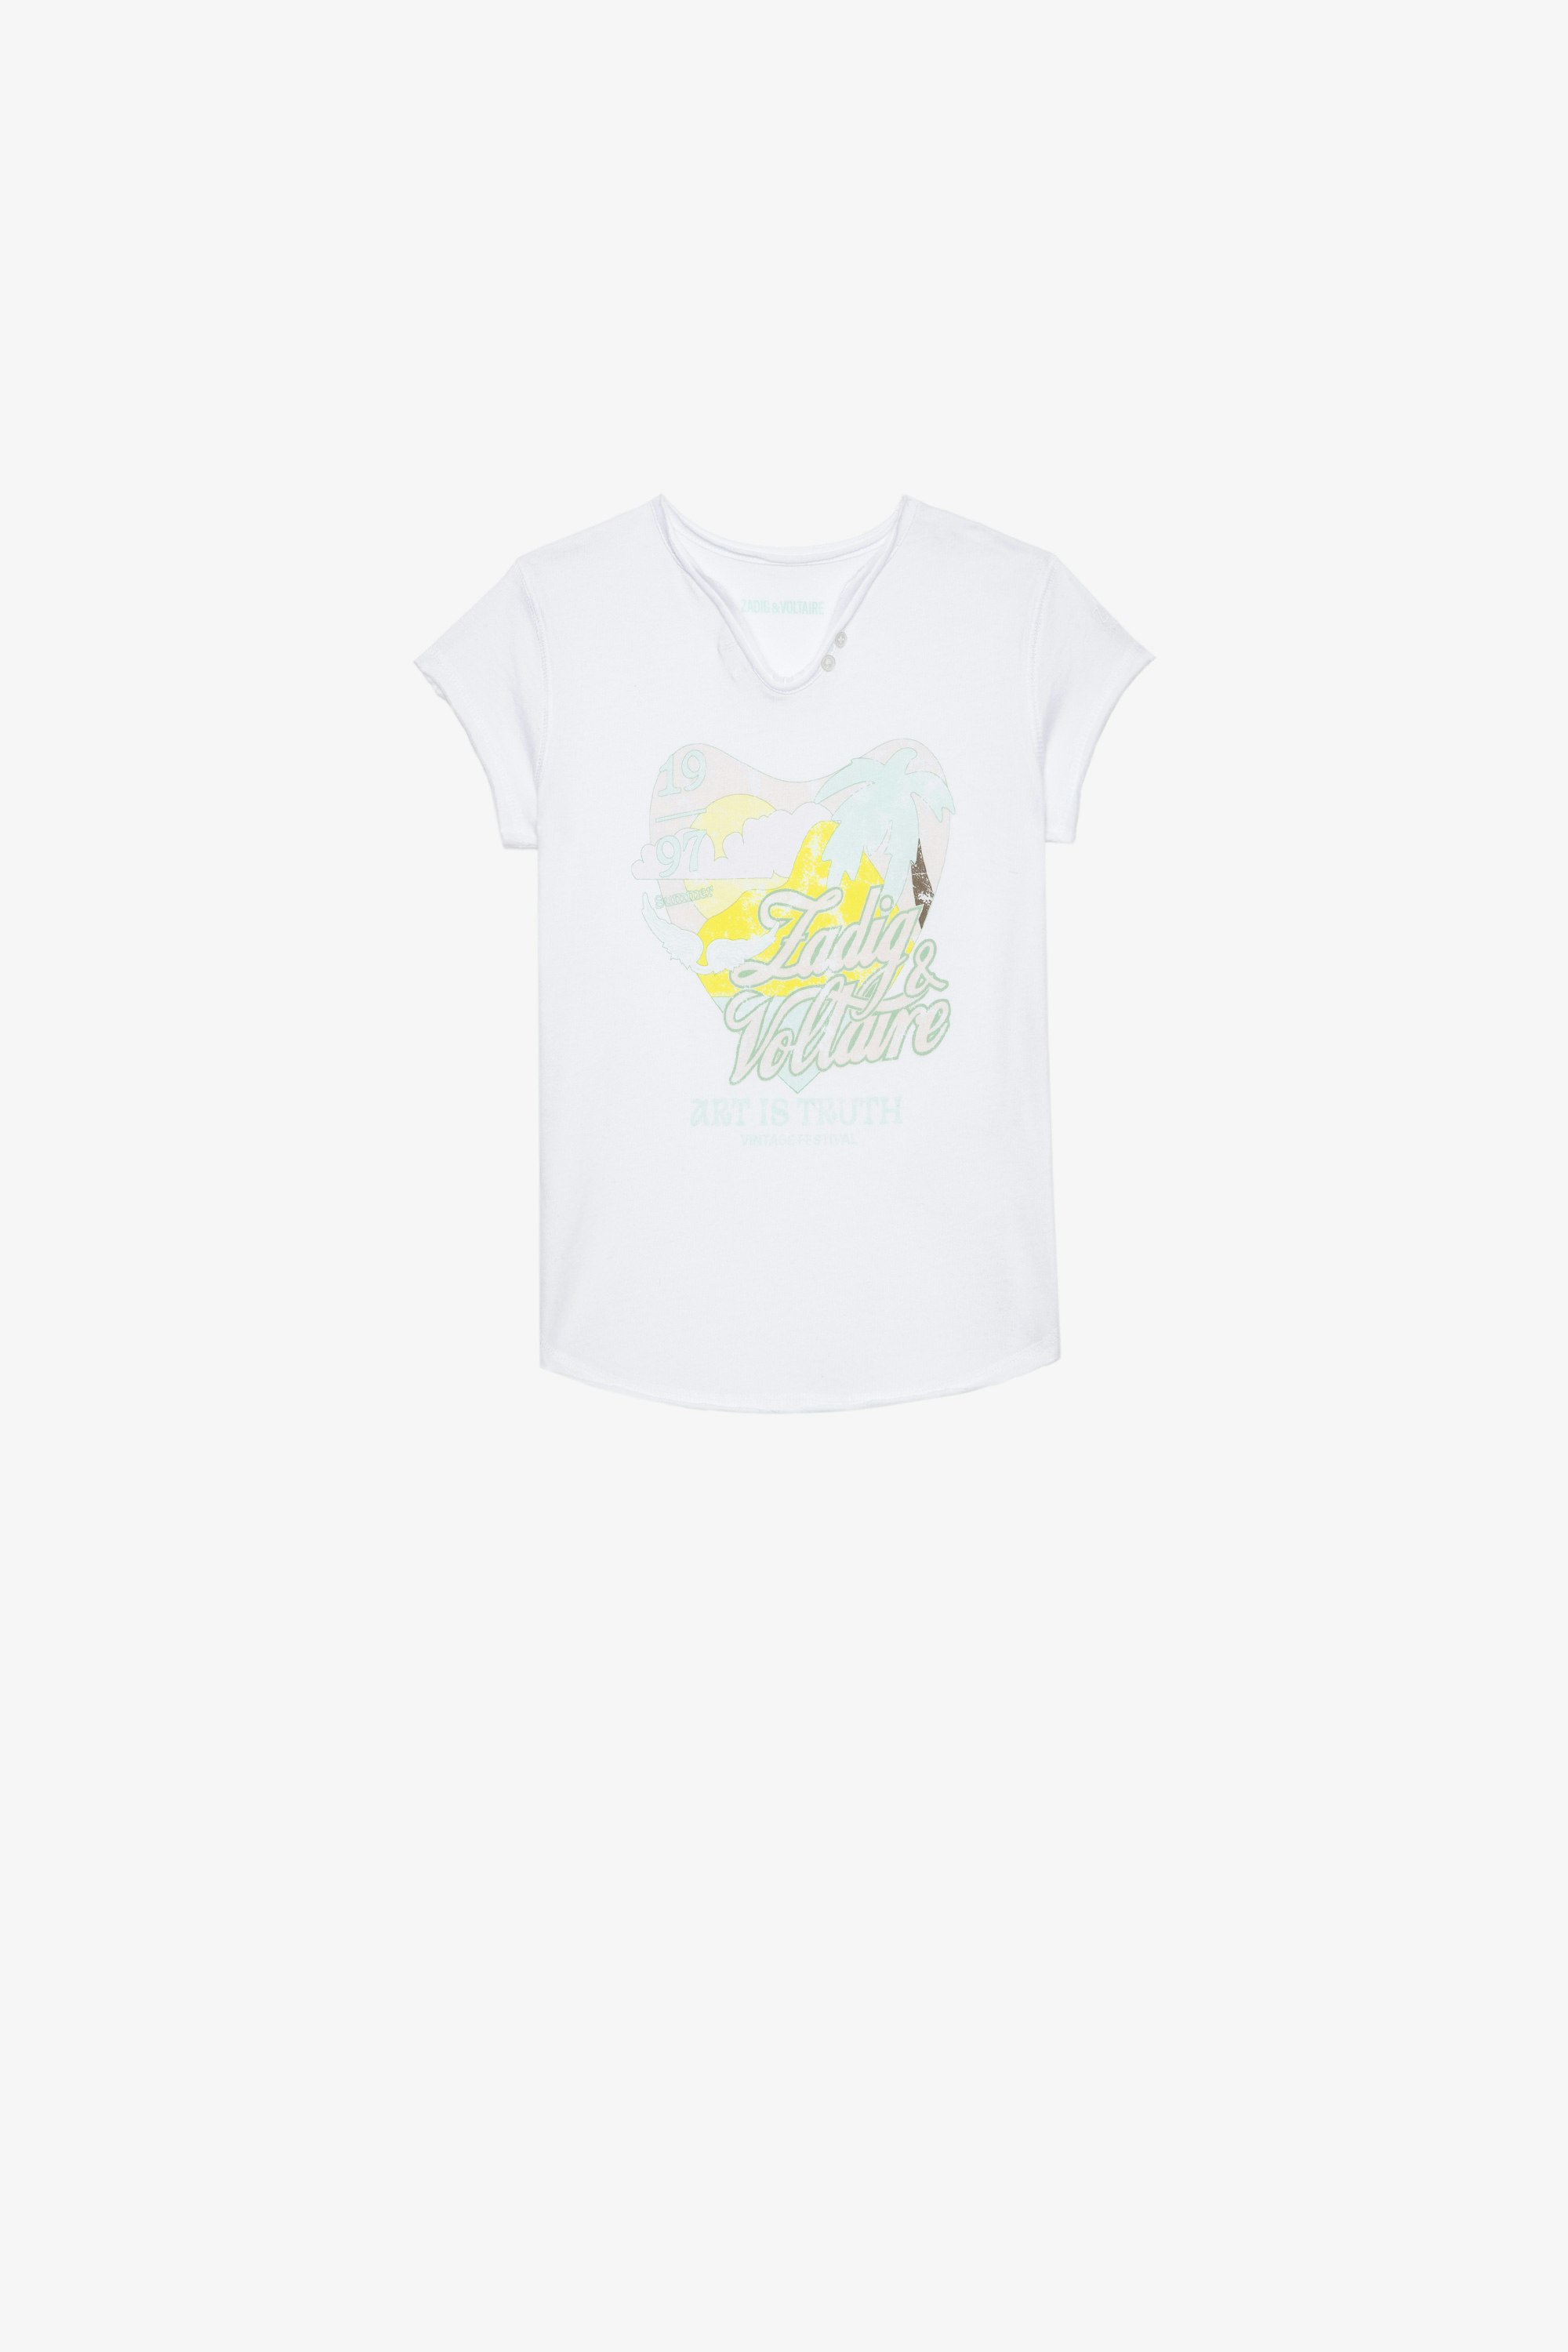 Camiseta Boxo Infantil Camiseta blanca de algodón infantil con estampado metalizado con cristales y bordados